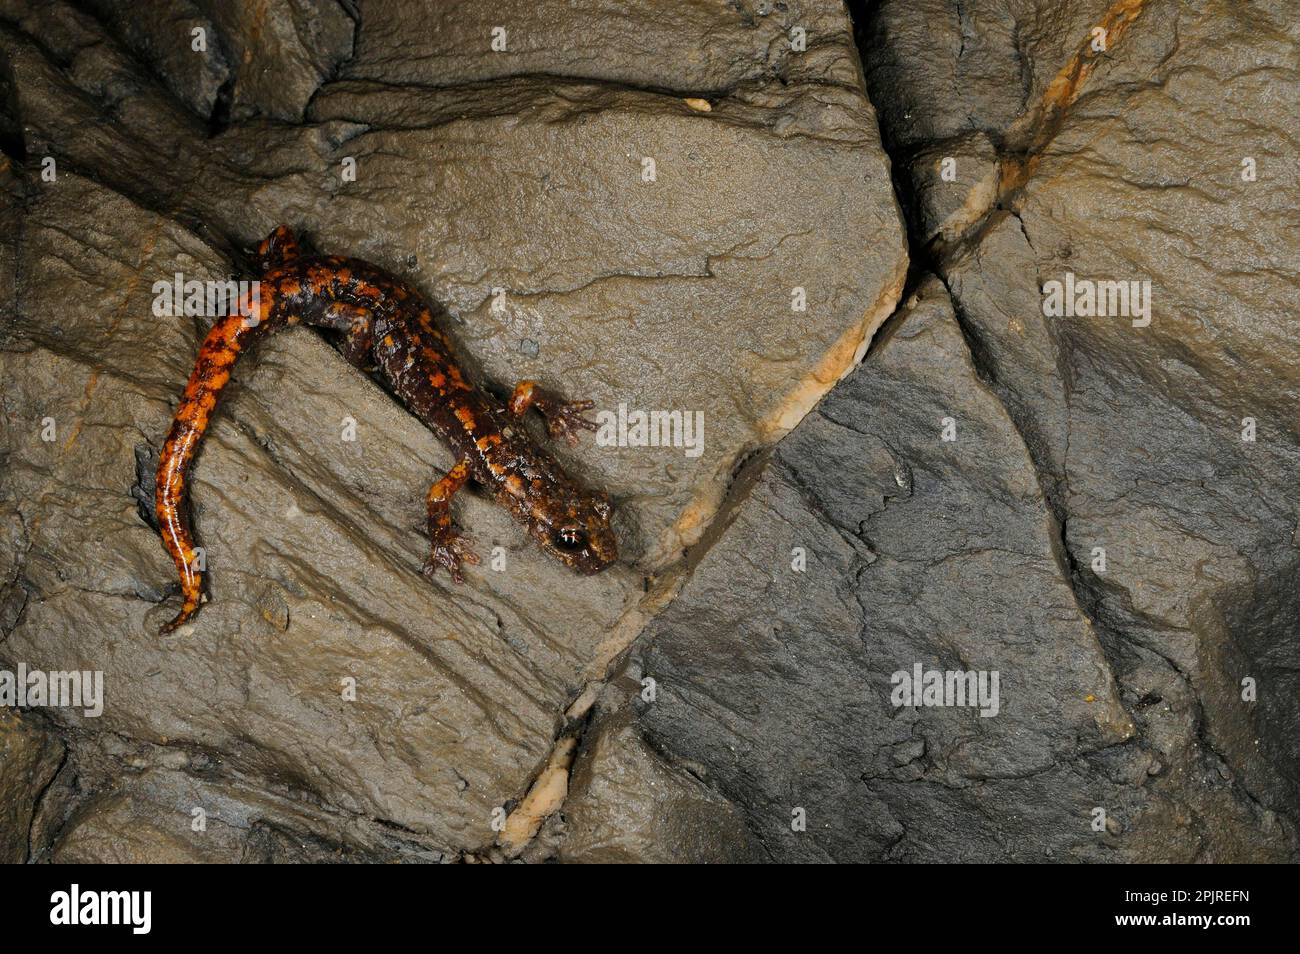 Grotta di Strinati Salamander (Speleomantes strinatii) adulto, riposante sulle rocce in grotta, Italia Foto Stock